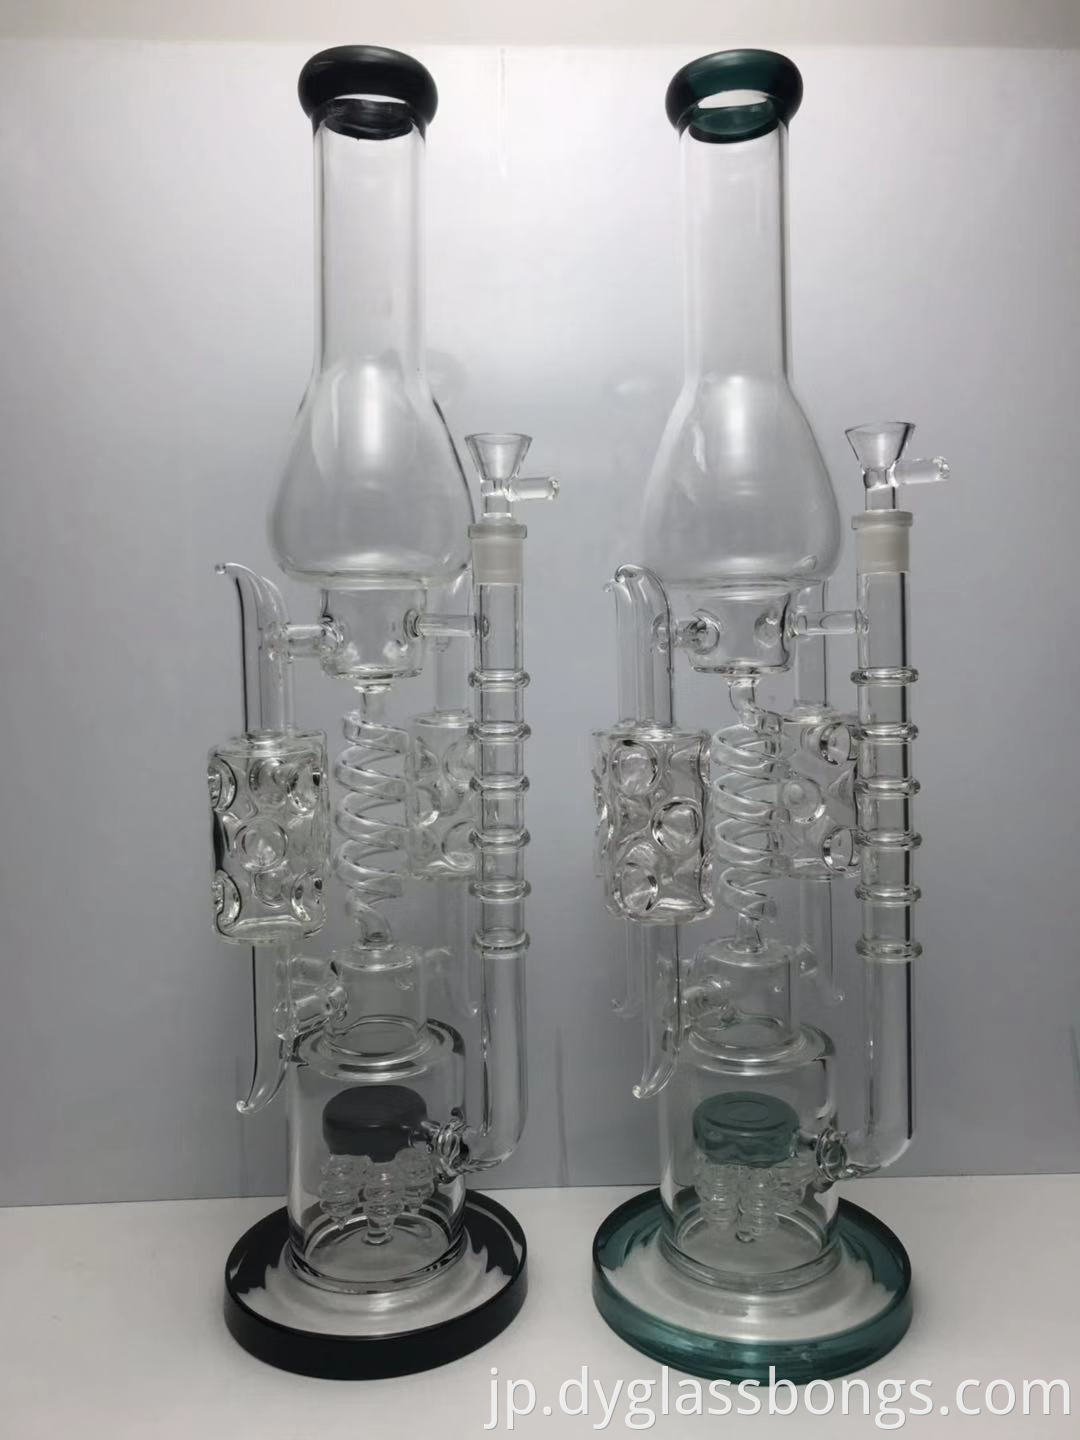 glass bongs online